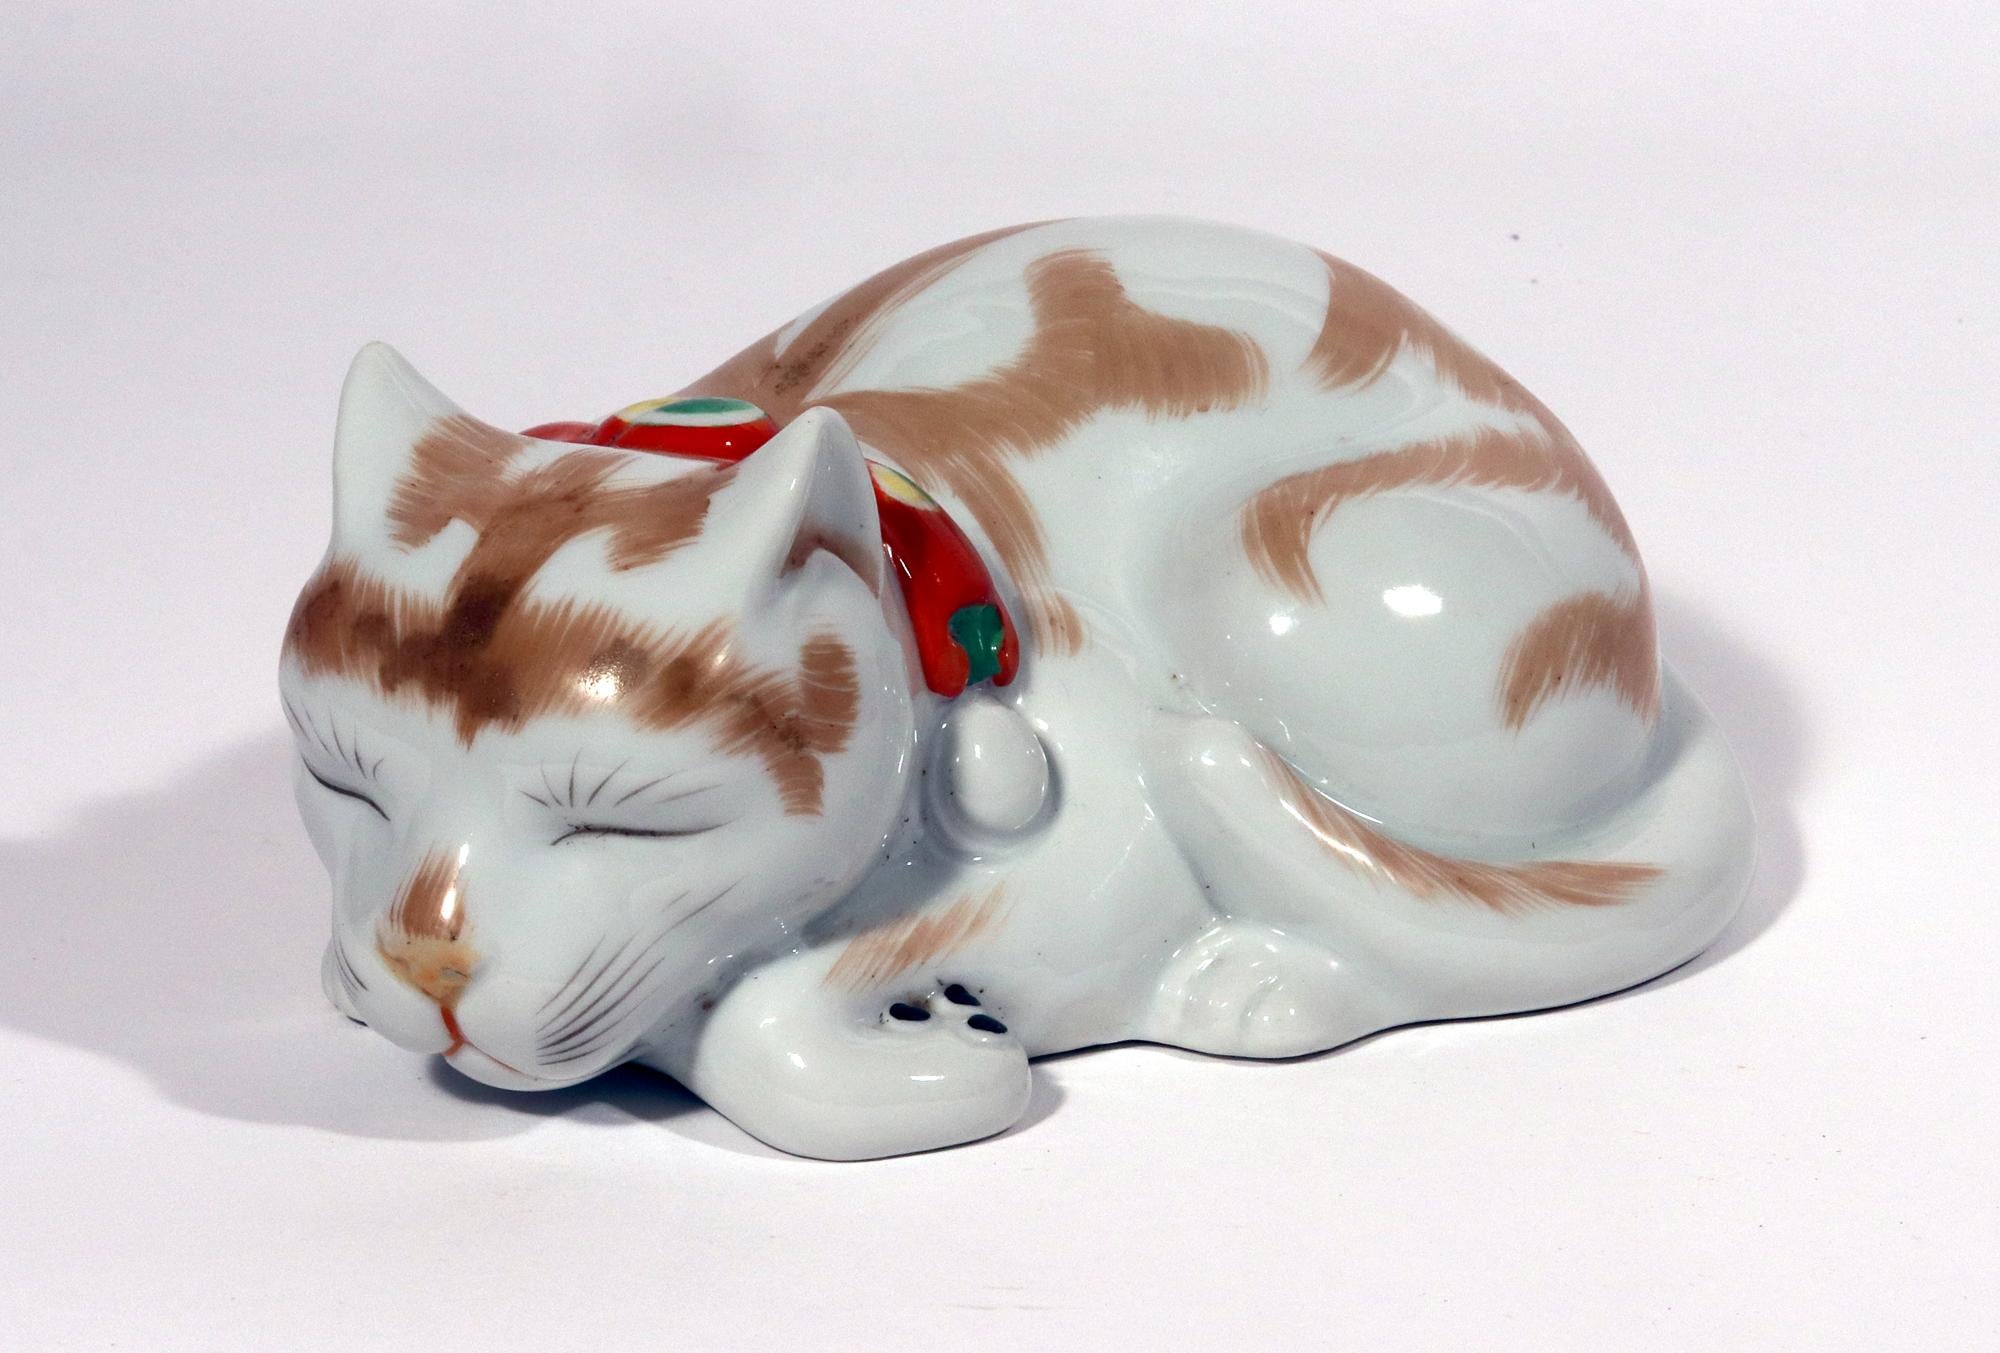 Japanische Kutani-Porzellanfigur einer schlafenden Katze,
Meiji-Periode,
CIRCA 1910-20

Das Porzellanmodell einer Katze zeigt eine naturgetreu modellierte Katze, die ihre Pfoten unter sich hat und deren Schwanz über dem Hinterteil gefaltet ist.  Um